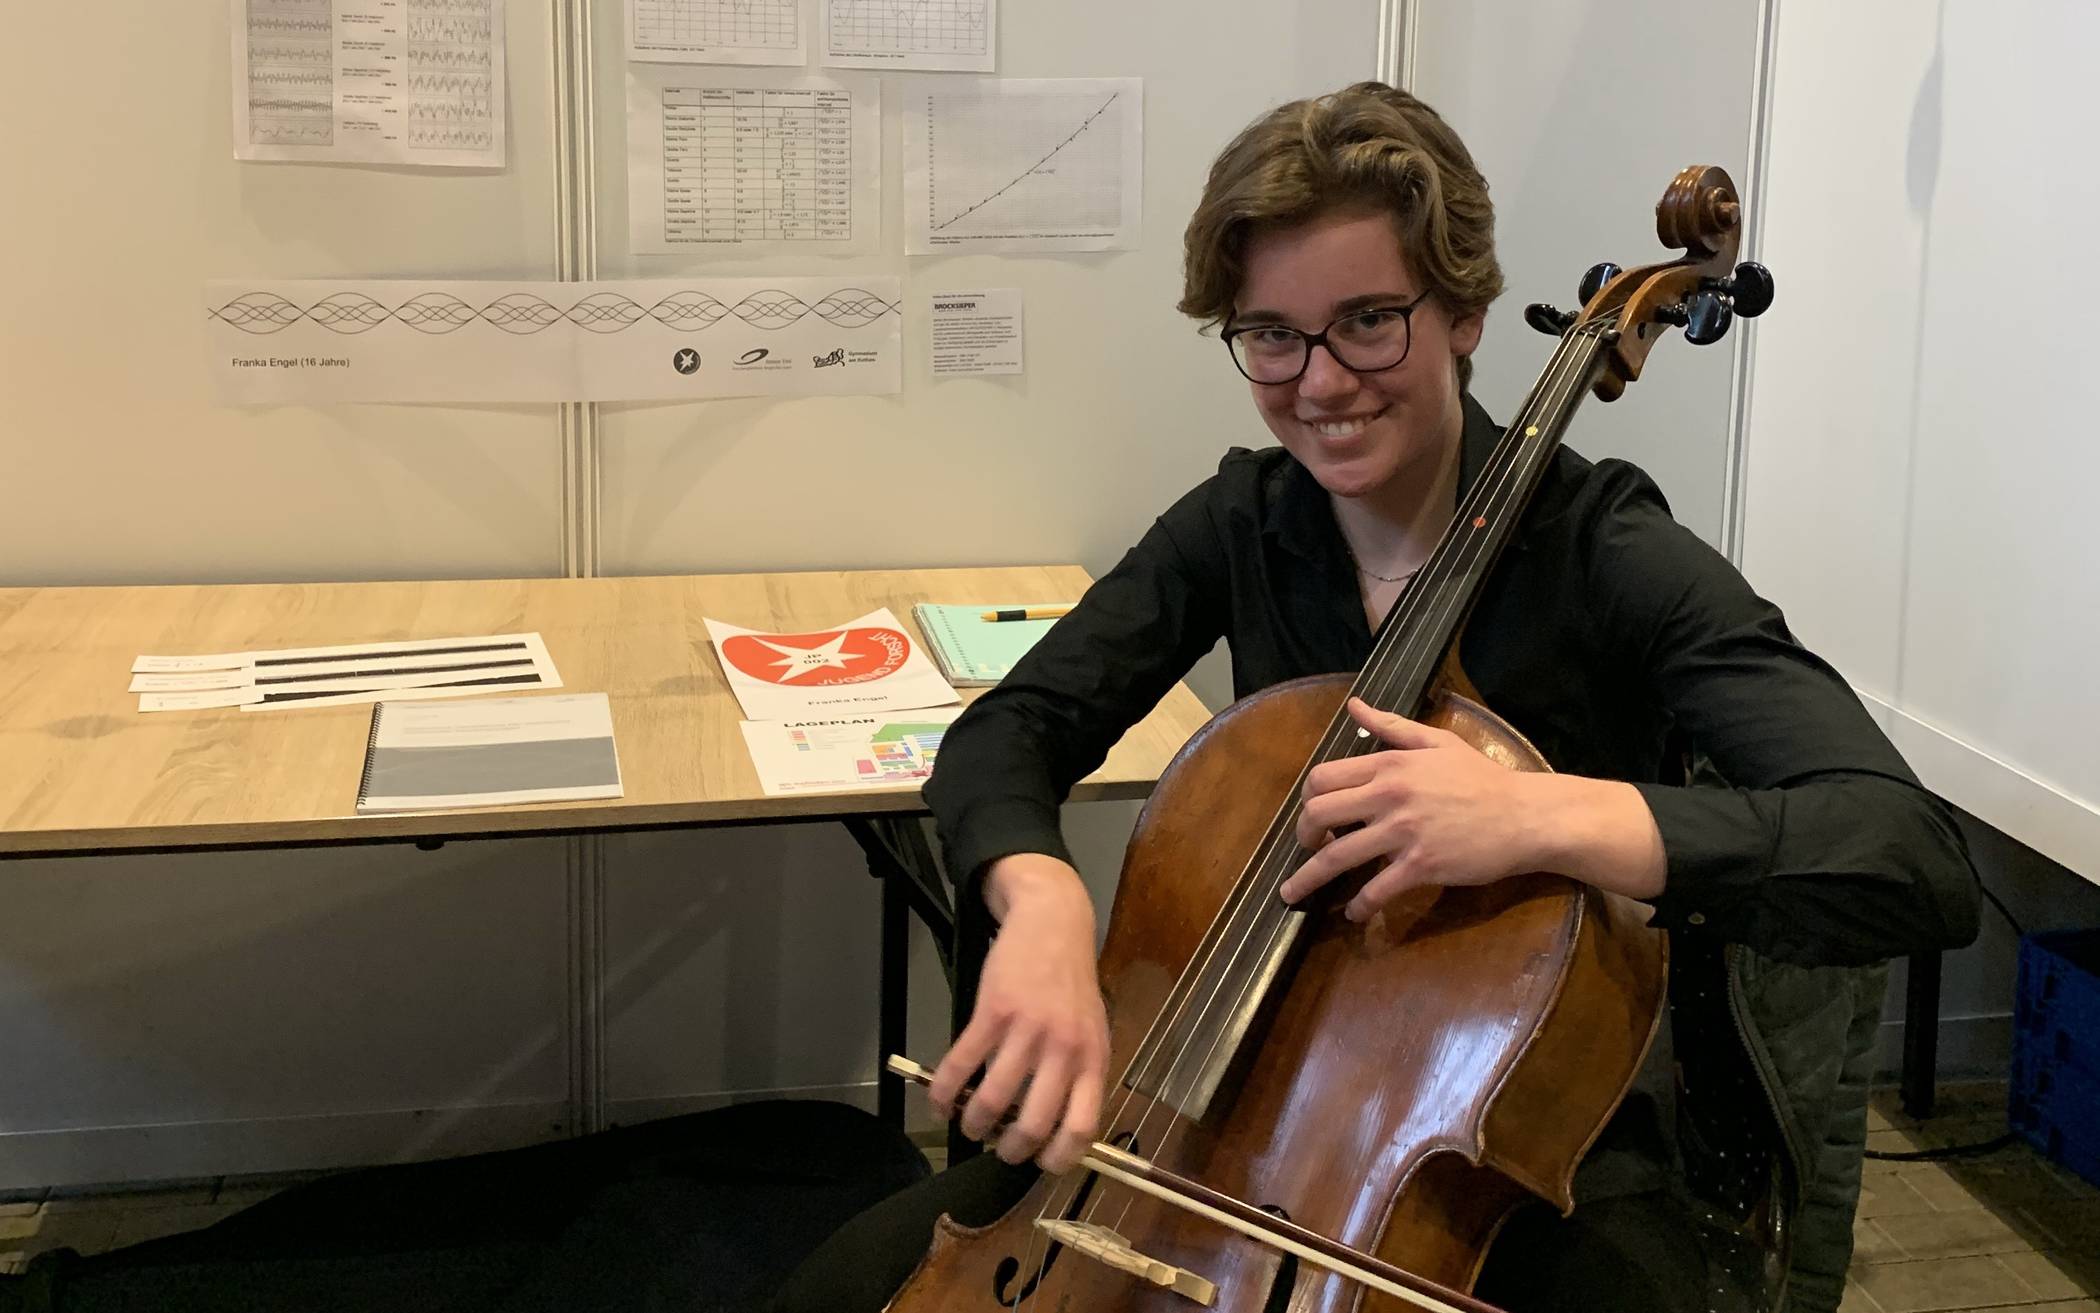 Mit ihrem Cello gewann Franka Engel (16) den ersten Platz und qualifizierte sich somit für den Landeswettbewerb Ende März.